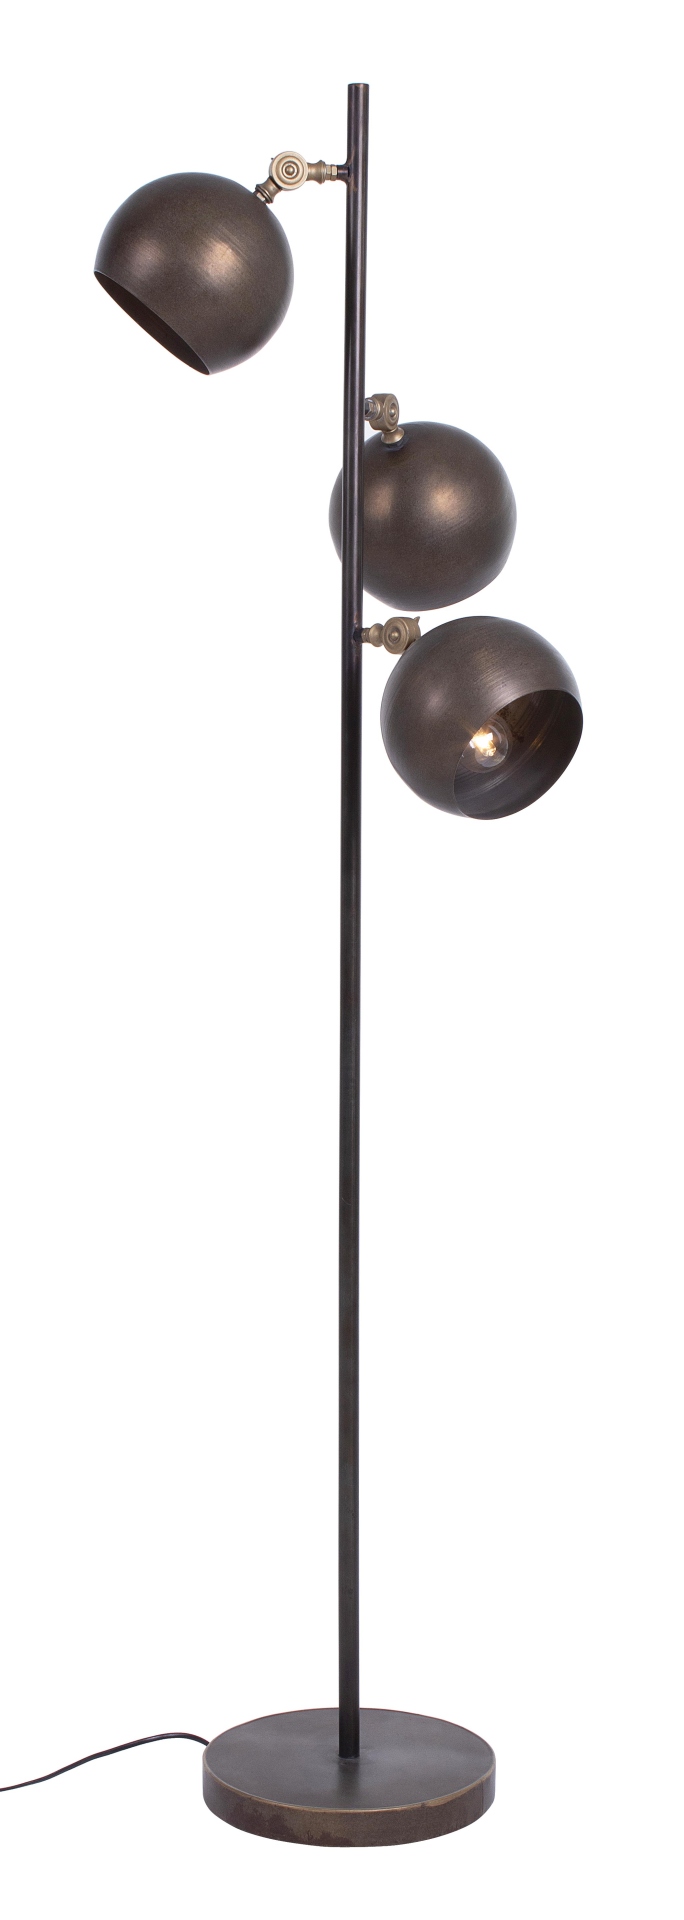 Die Stehleuchte Blaze überzeugt mit ihrem modernen Design. Gefertigt wurde sie aus Metall, welches einen Messing Farbton besitzt. Die Lampe besitzt drei Lichtquellen. Die Lampe besitzt eine Höhe von 161 cm.